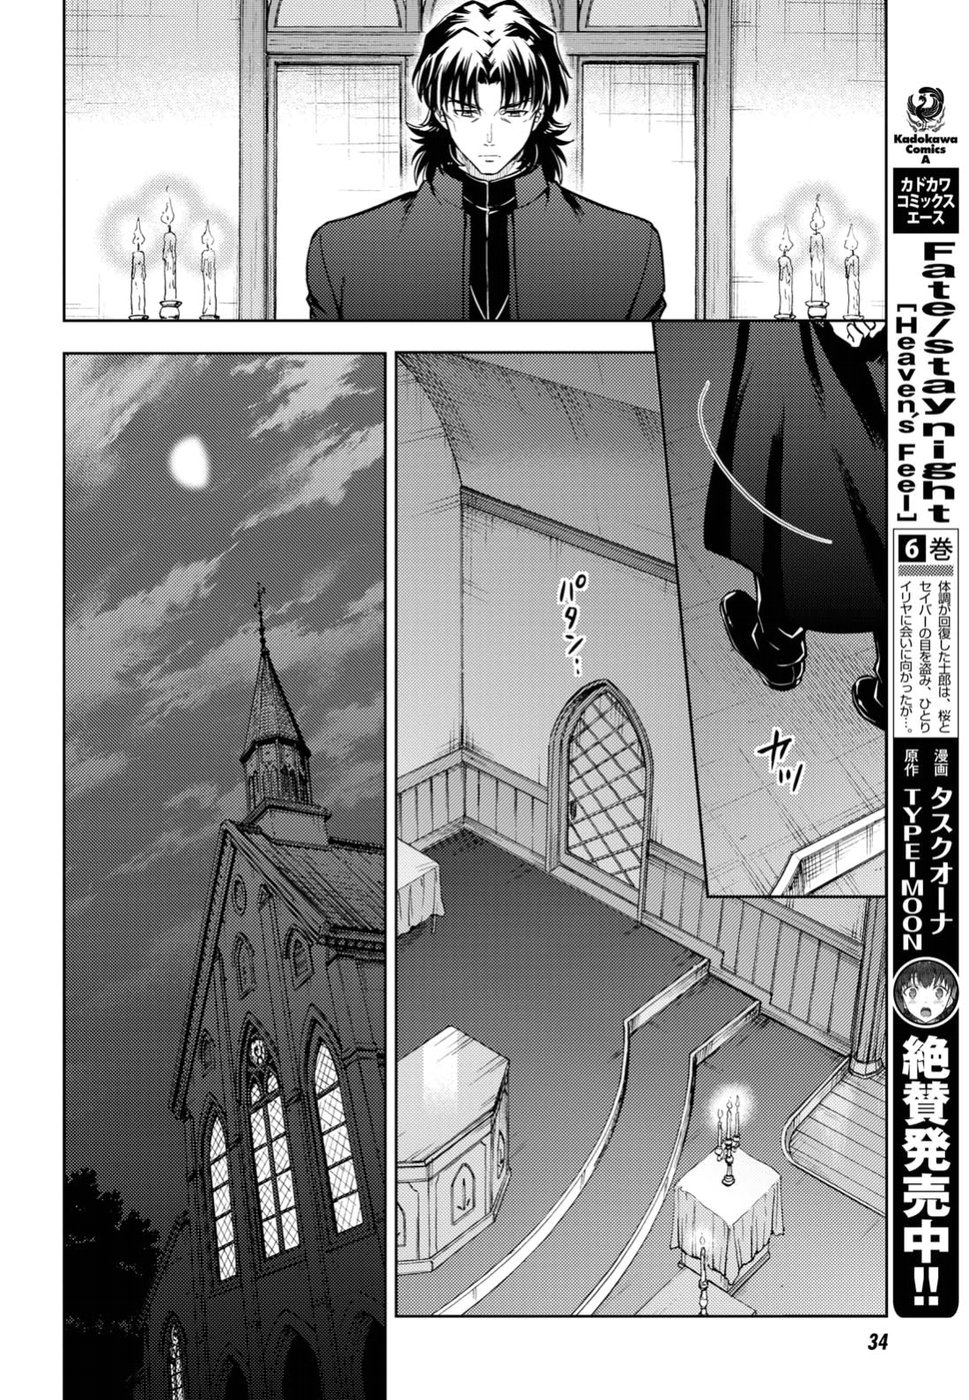 Fate/stay night: Heaven's Feel Vol. 7 Ch. 40